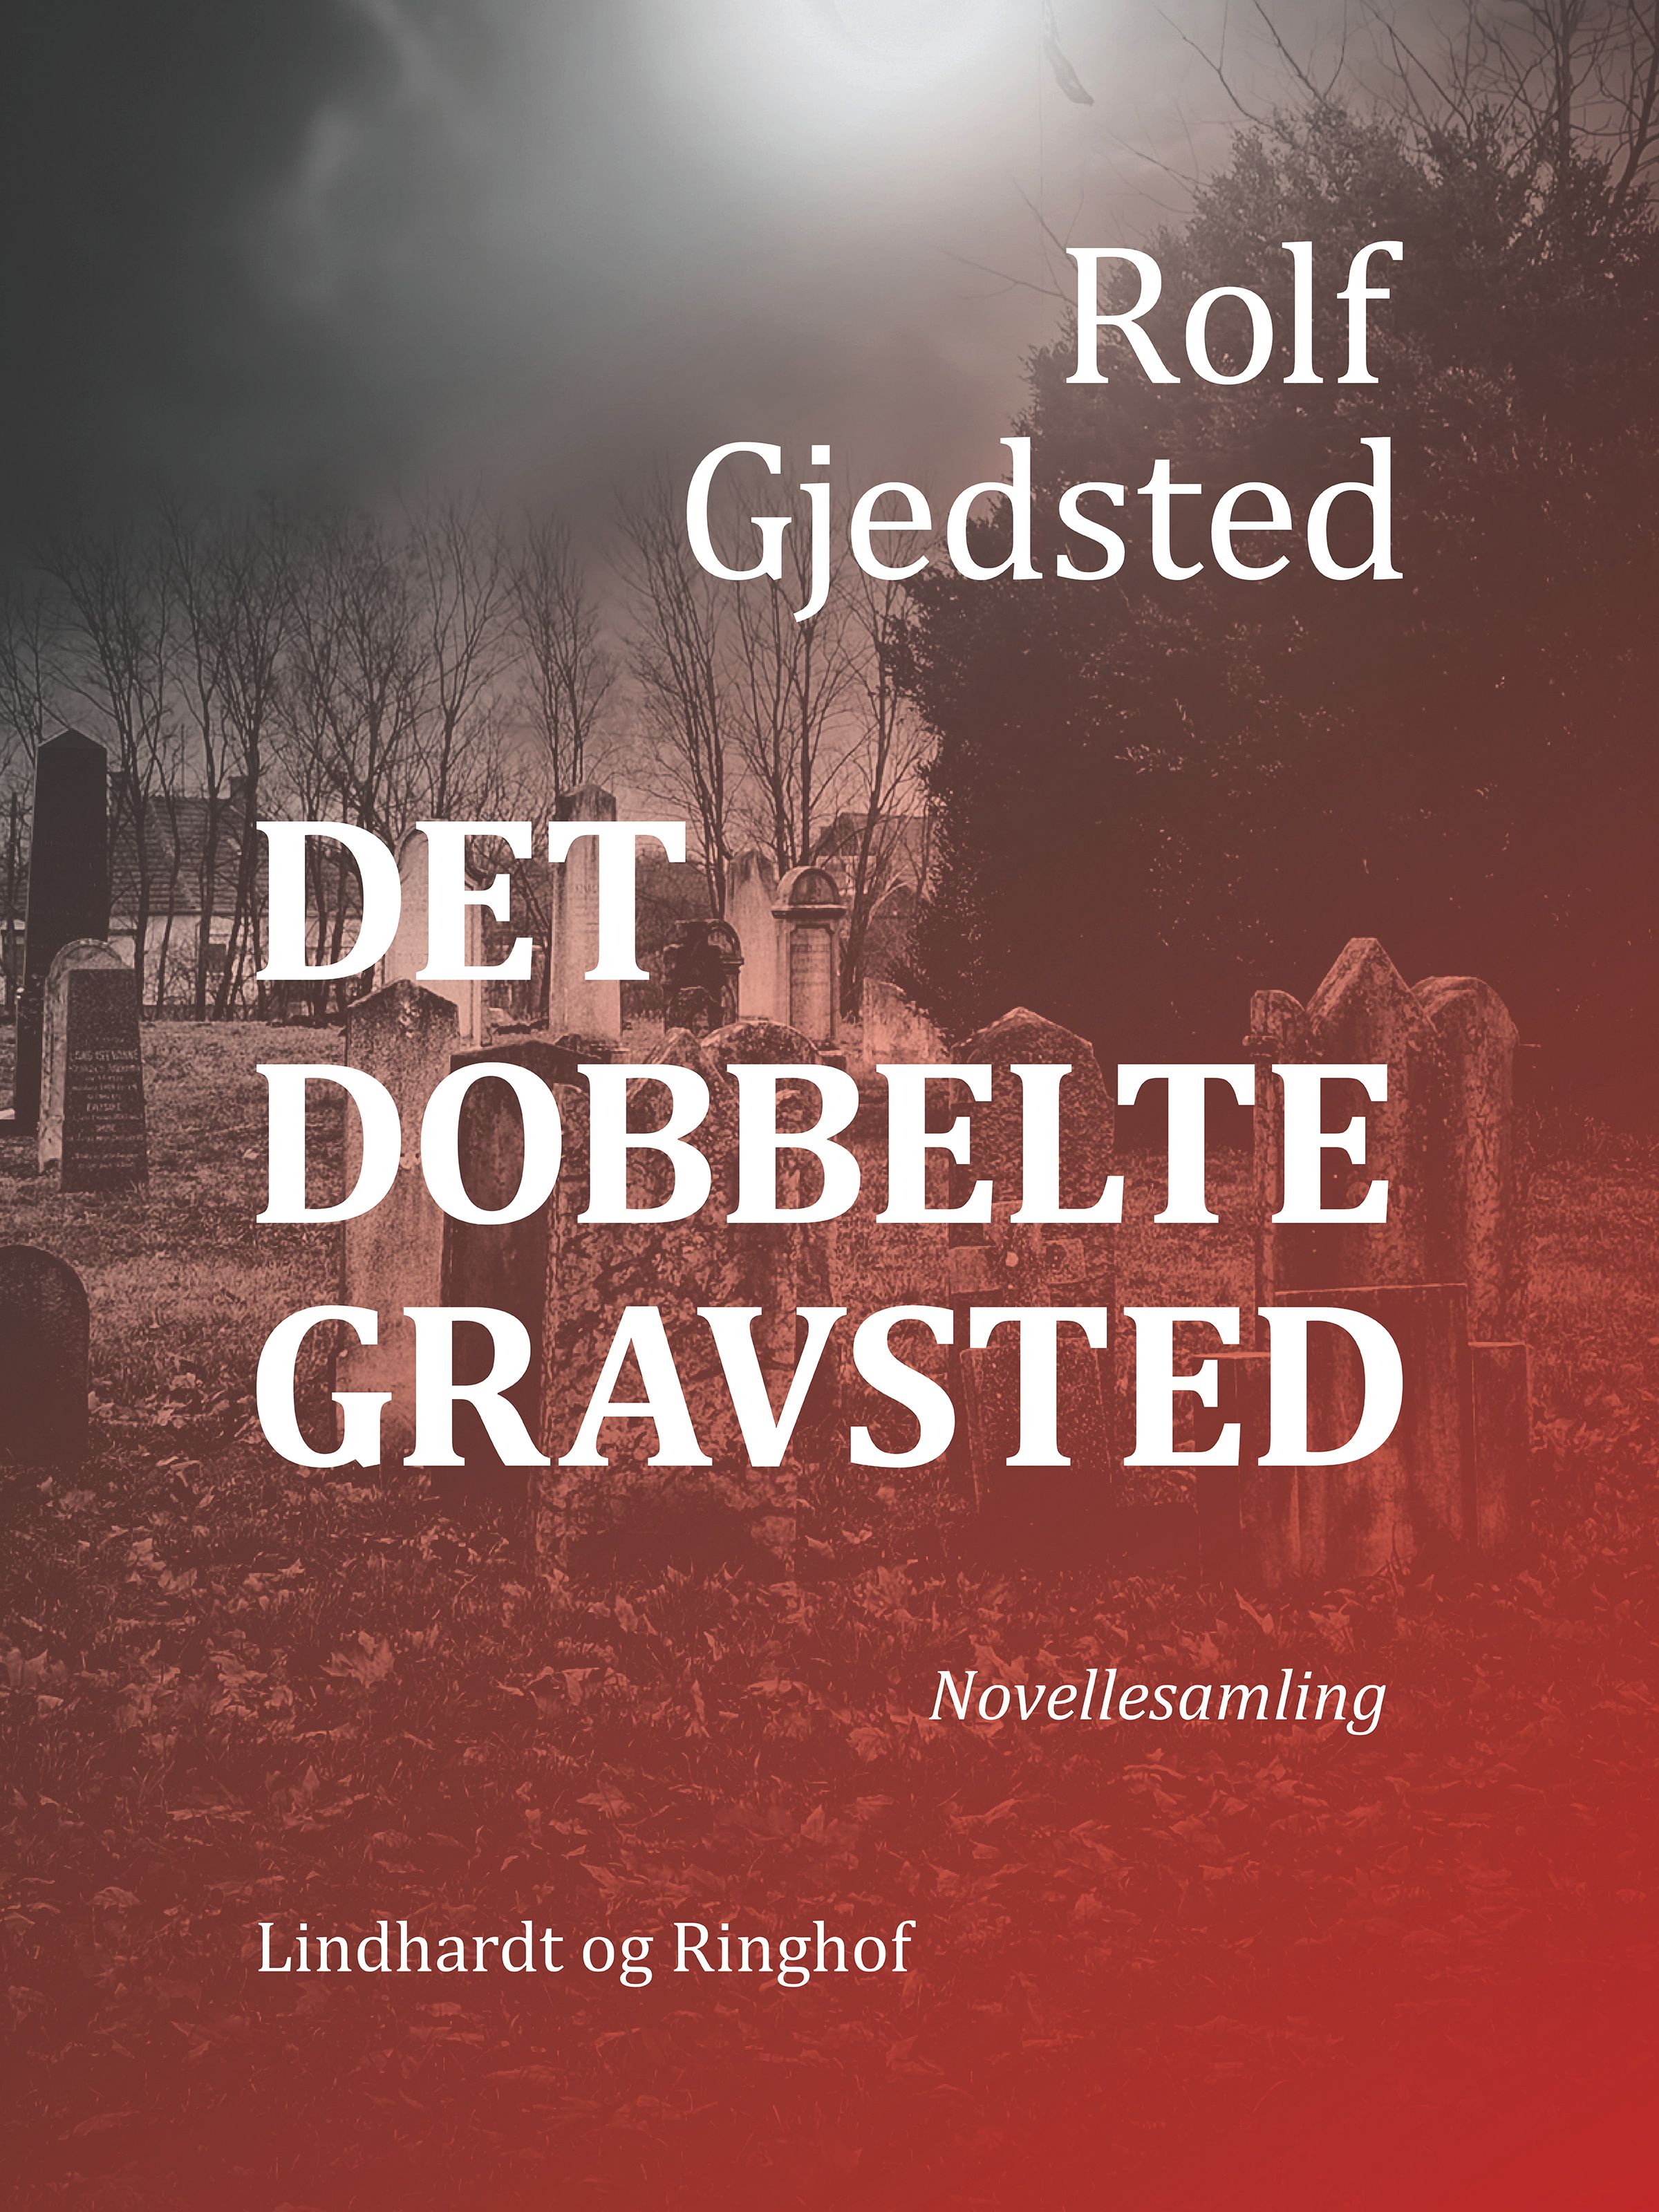 Det dobbelte gravsted, audiobook by Rolf Gjedsted